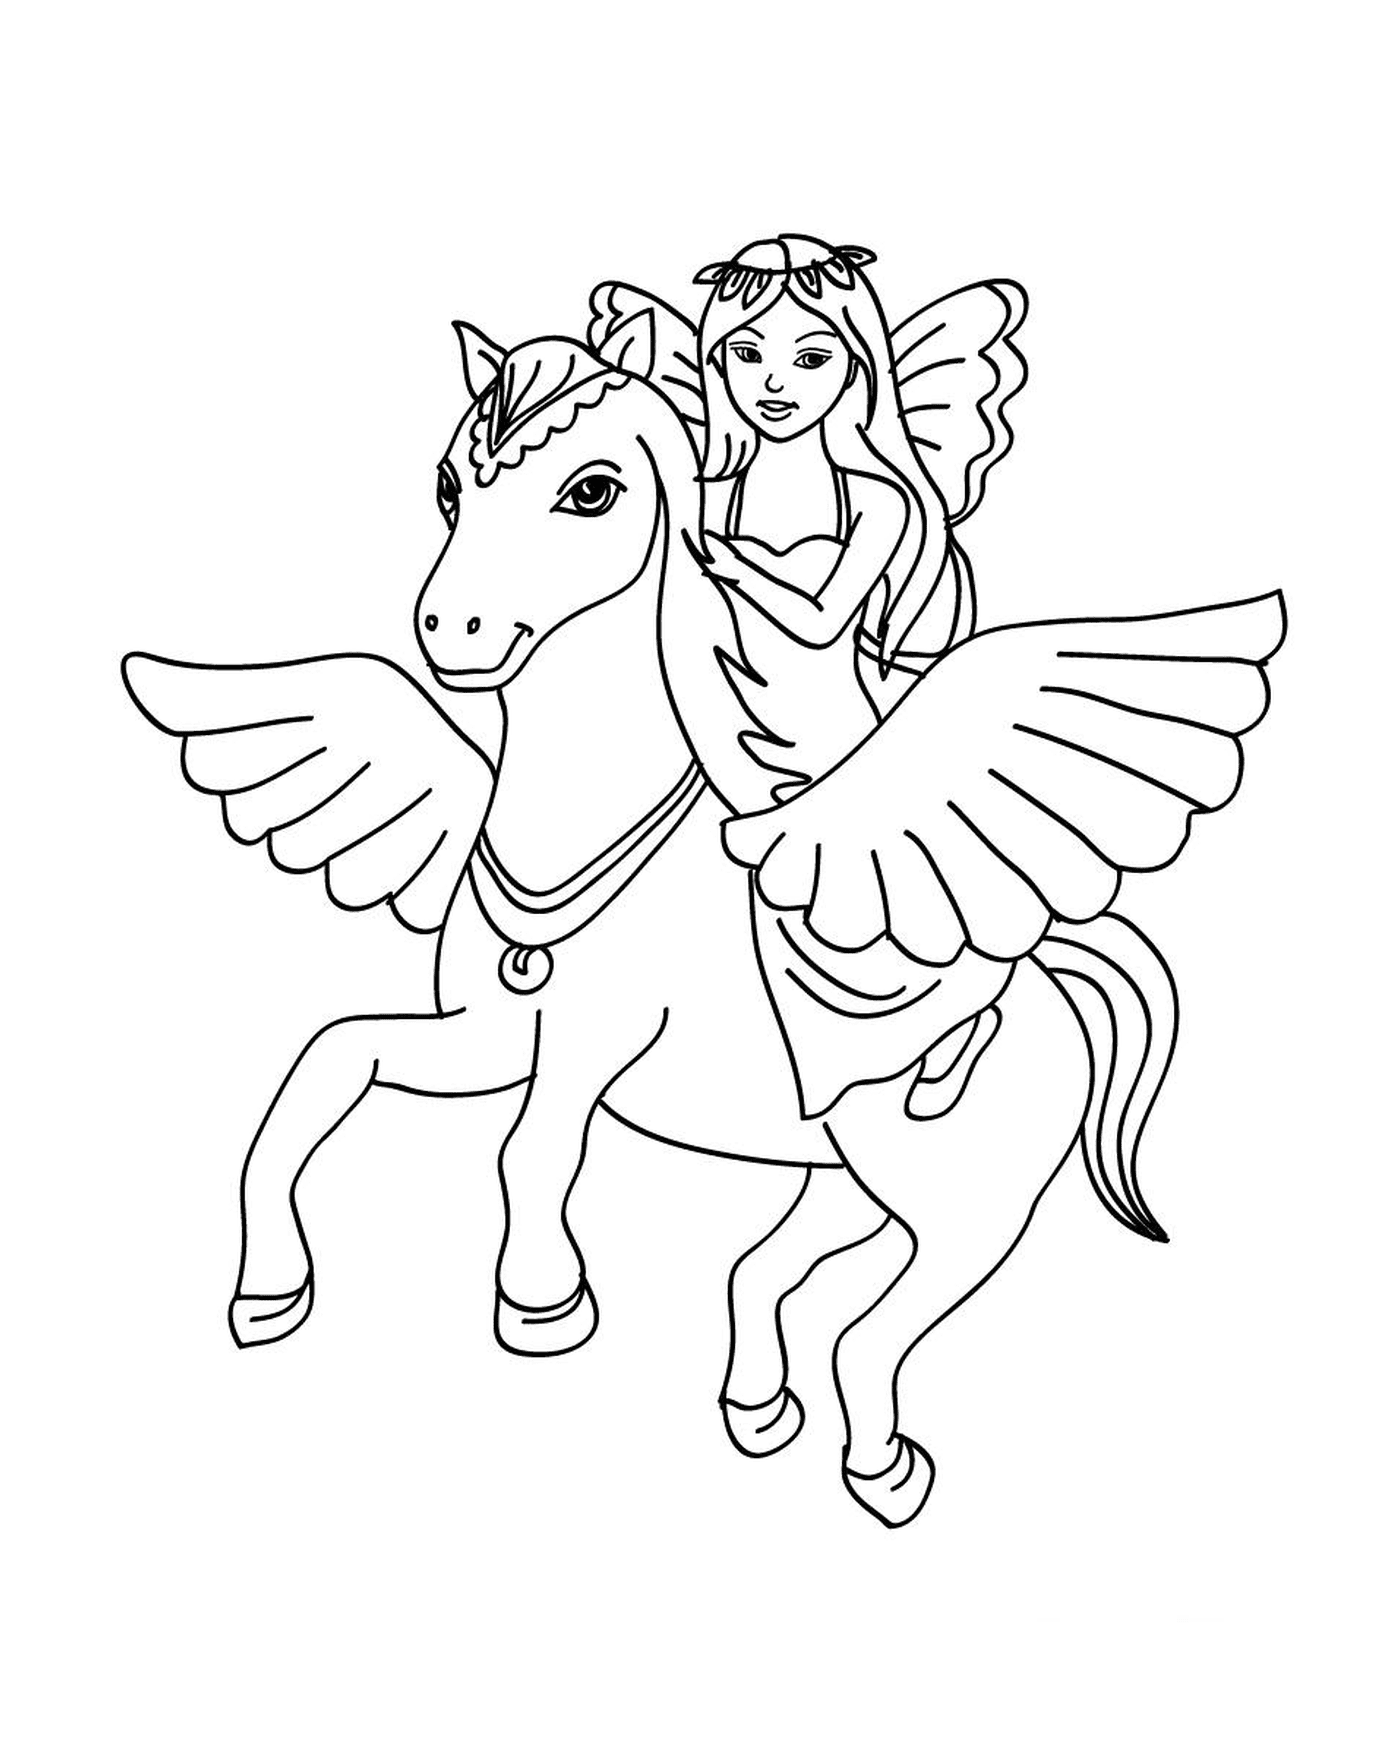  Una fata che cavalca su un pony 